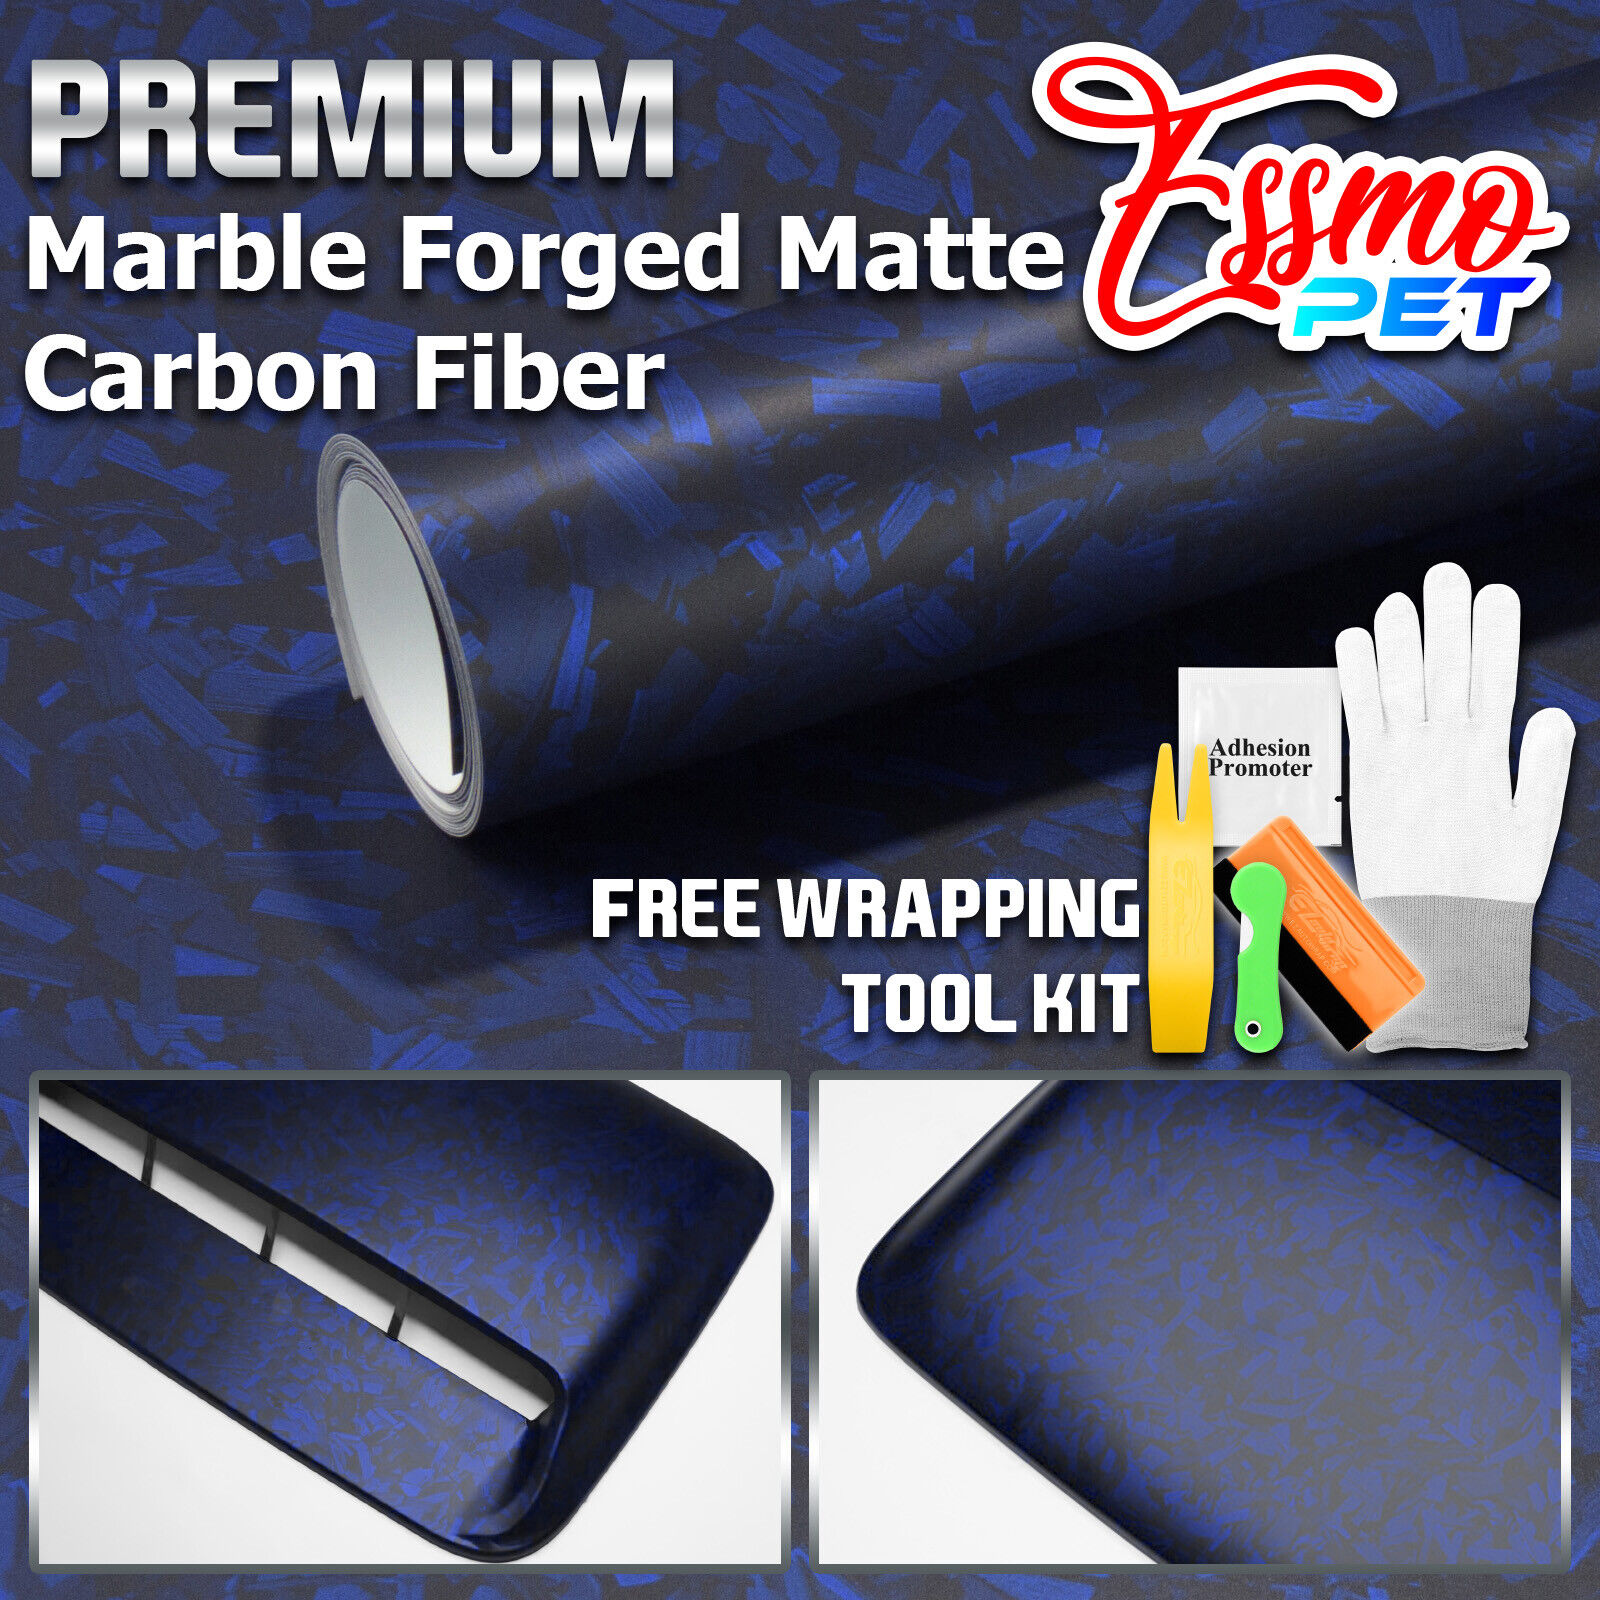 ESSMO PET Marble Forged Matte Carbon Fiber Royal Blue Car Vehicle Vinyl Wrap